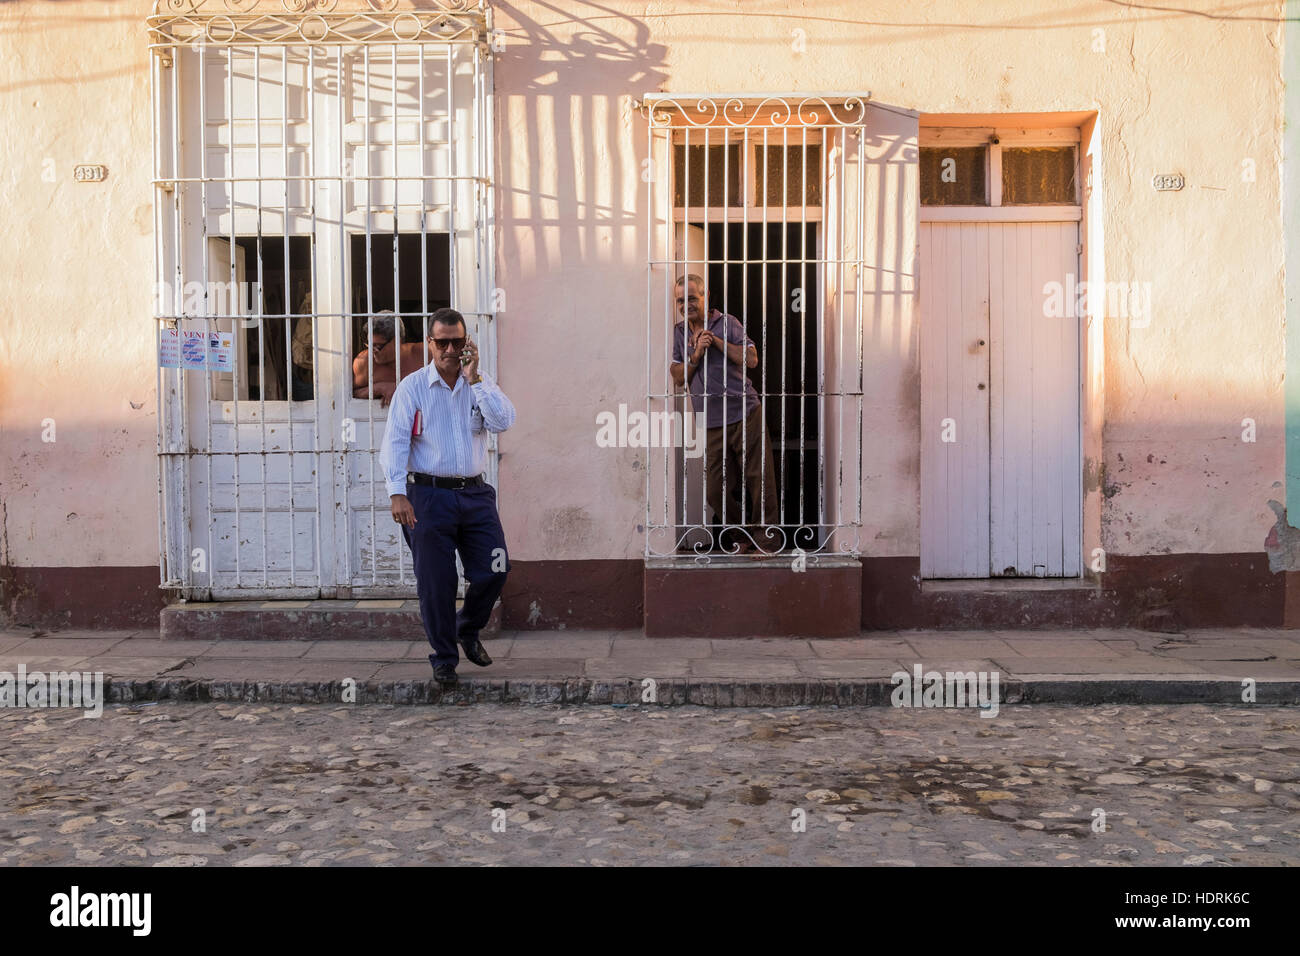 Mann auf dem Handy geht weg von Haus mit typischen vergitterten Fenstern in Trinidad, Kuba Stockfoto